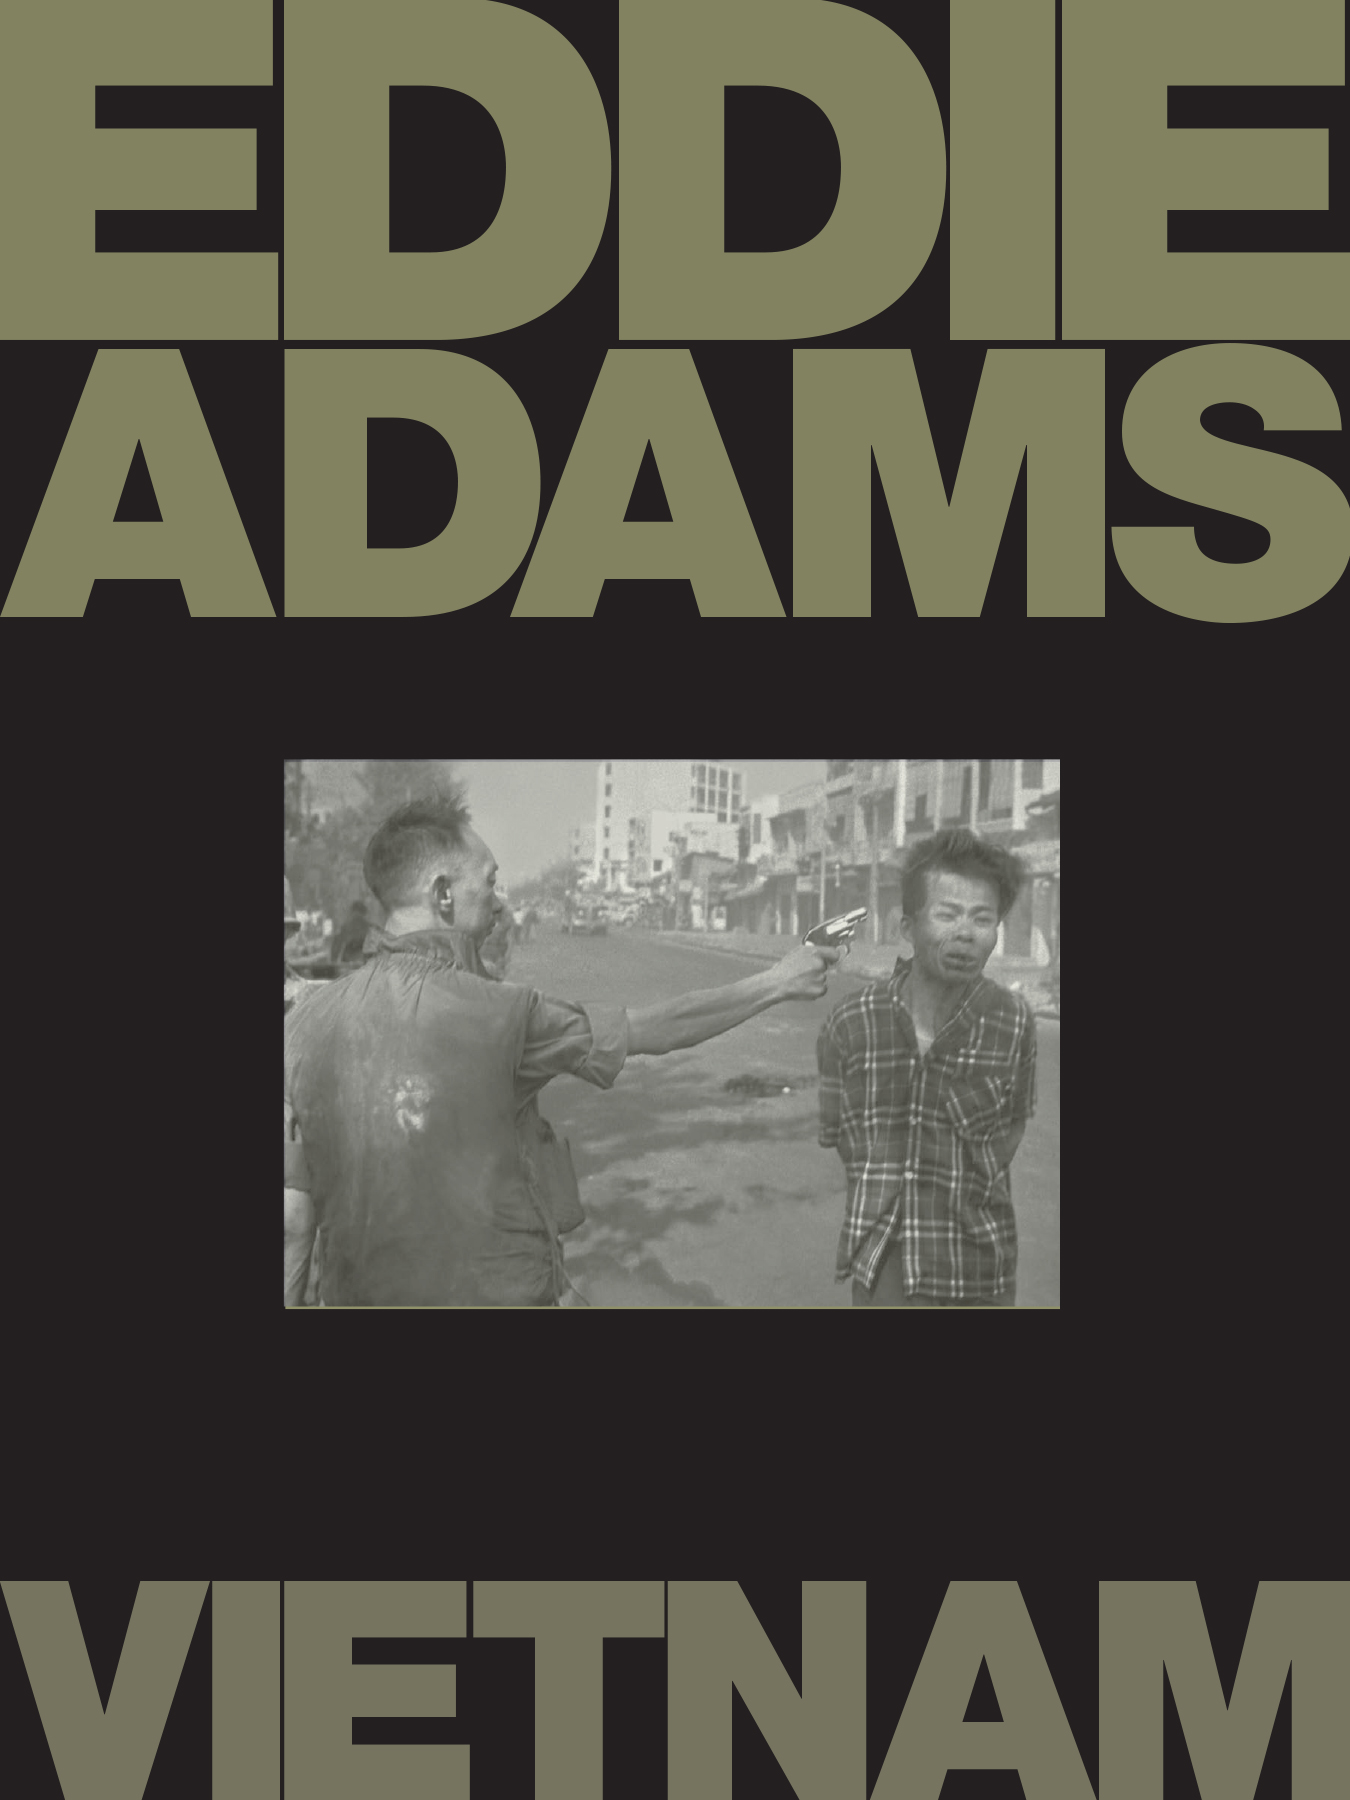 EDDIEADAMS-VIETNAM-FINAL-1.jpg